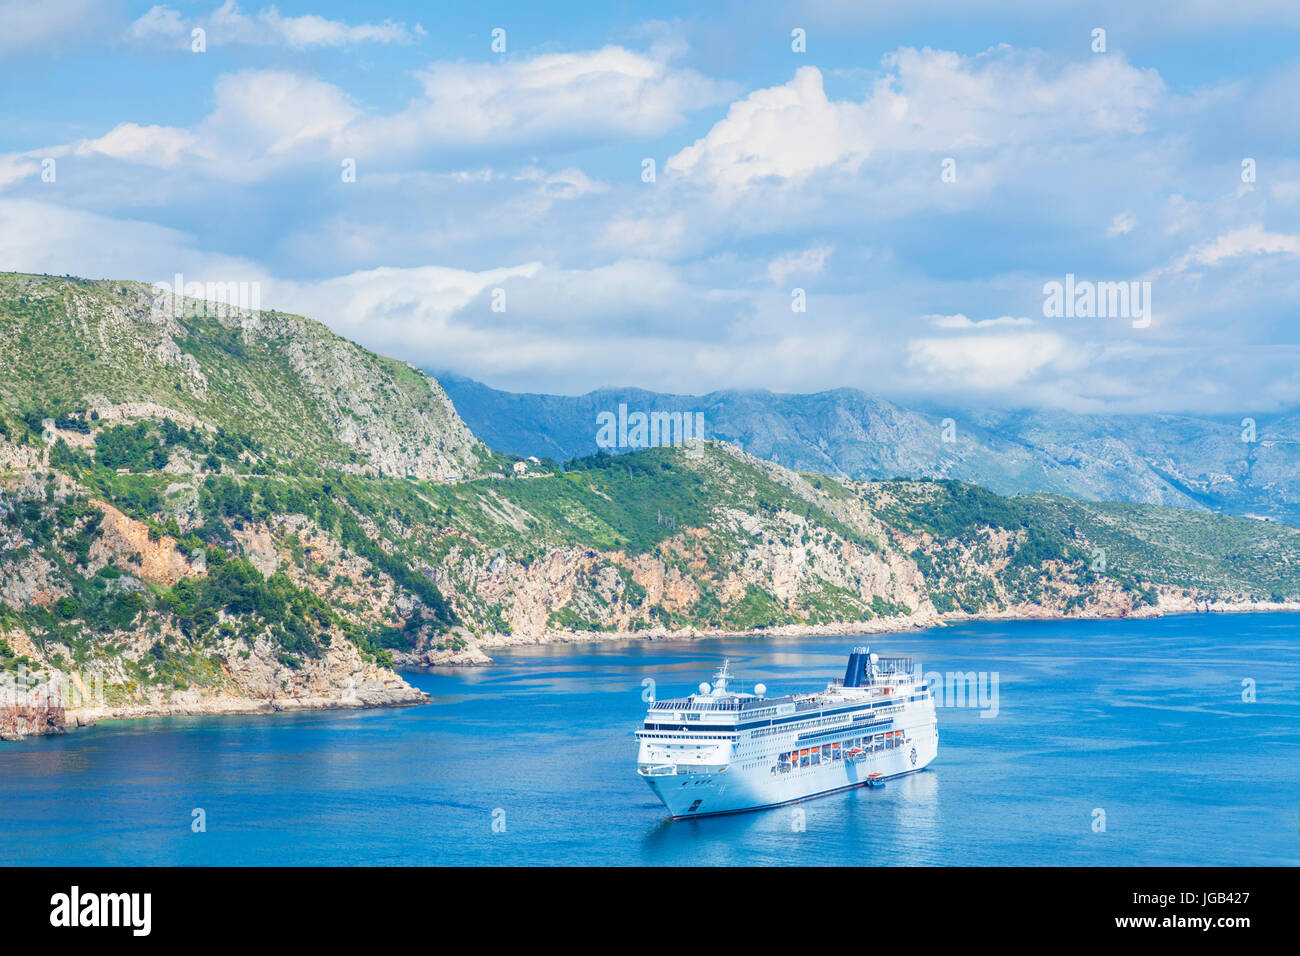 Croatie Dubrovnik Croatie côte Dalmate bateau de croisière naviguant sur la côte dalmate vers dubrovnik croatie mer adriatique mer adriatique Banque D'Images